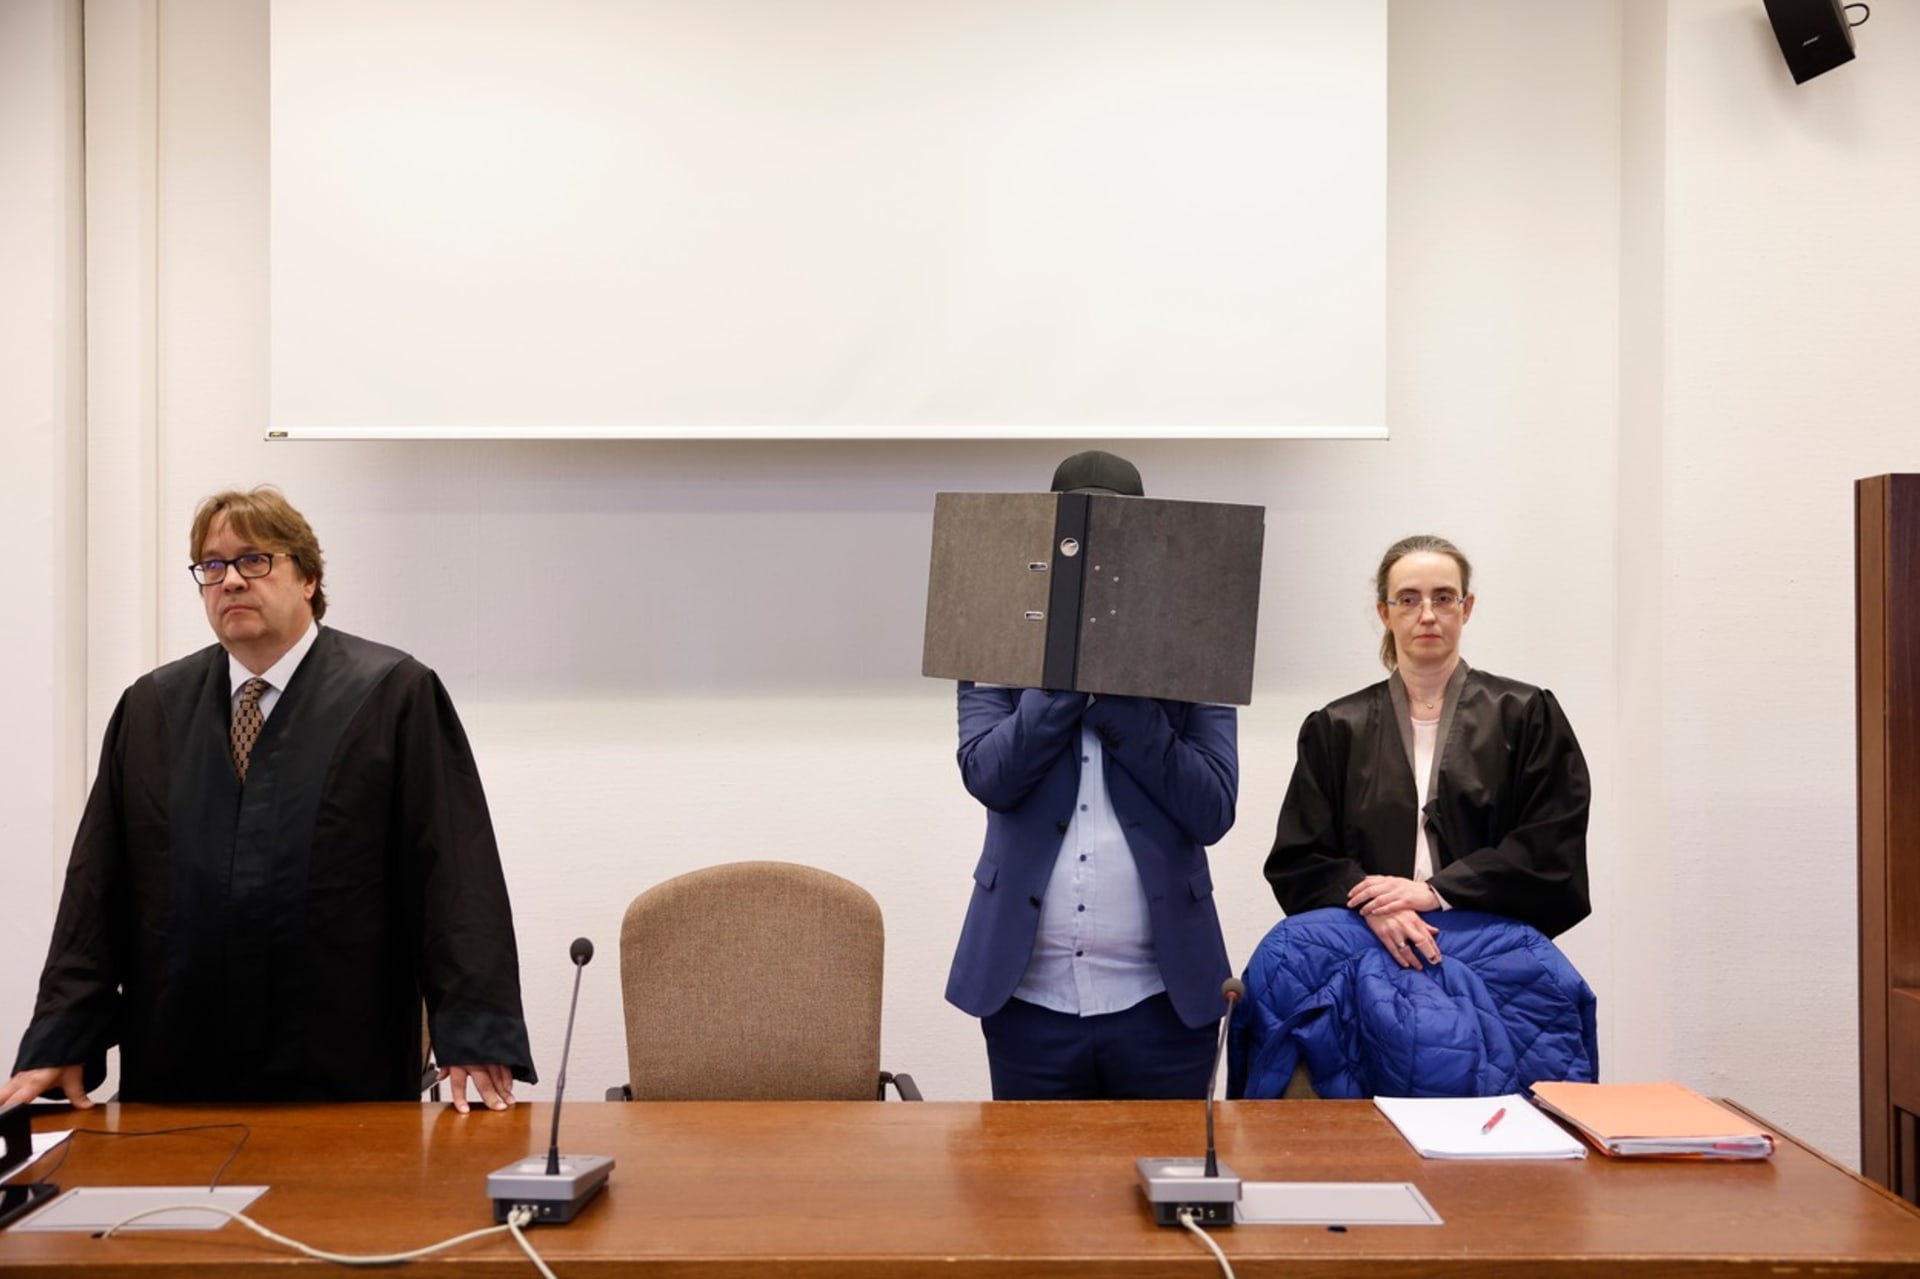 Odsouzený Tobias W. se před fotografy úzkostlivě chránil.